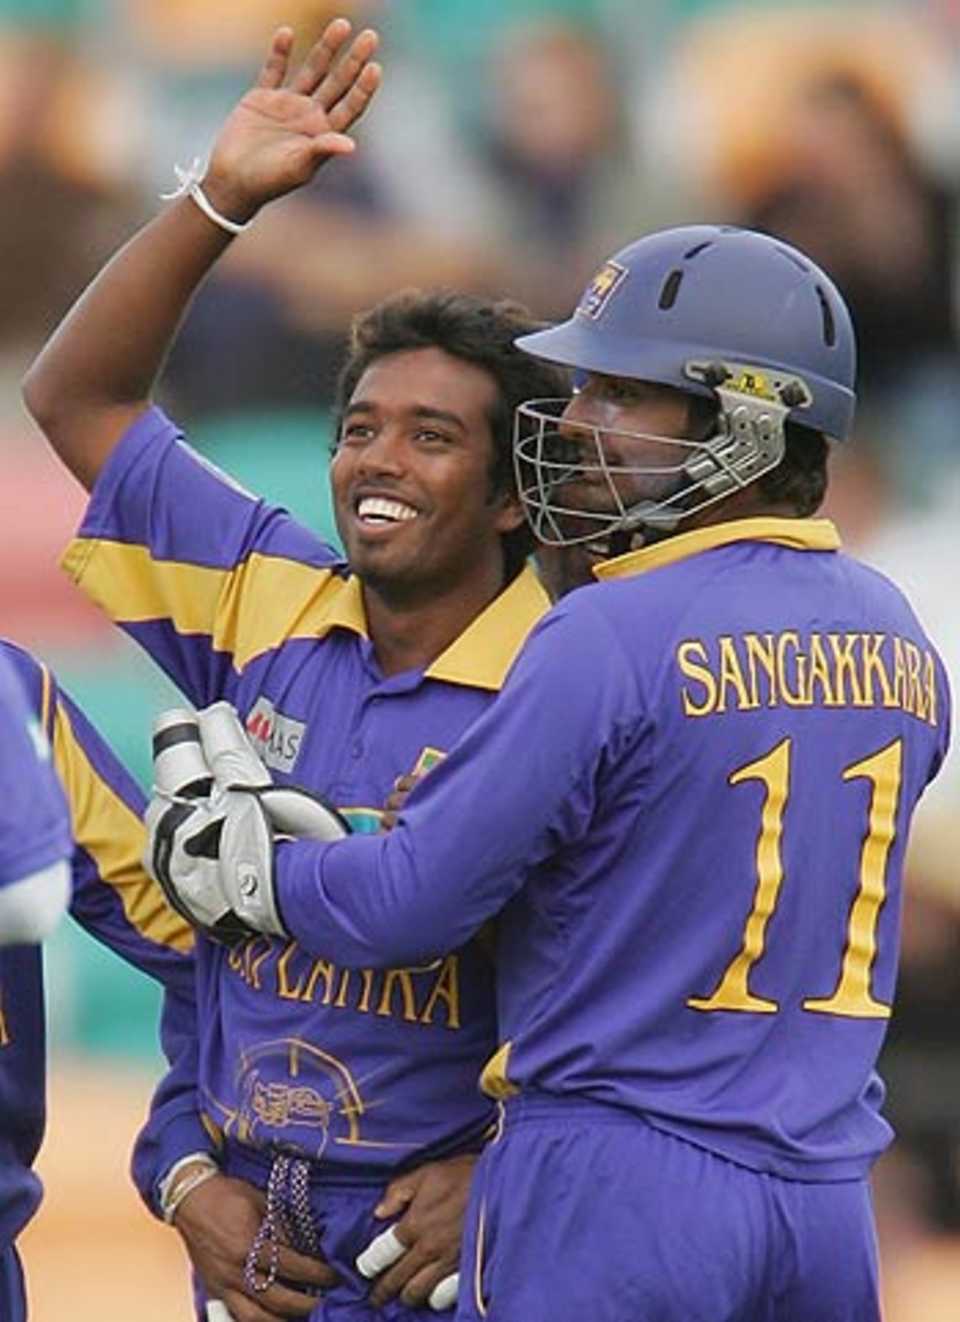 Malinga Bandara and Kumar Sangakkara combined to dismiss Shaun Pollock